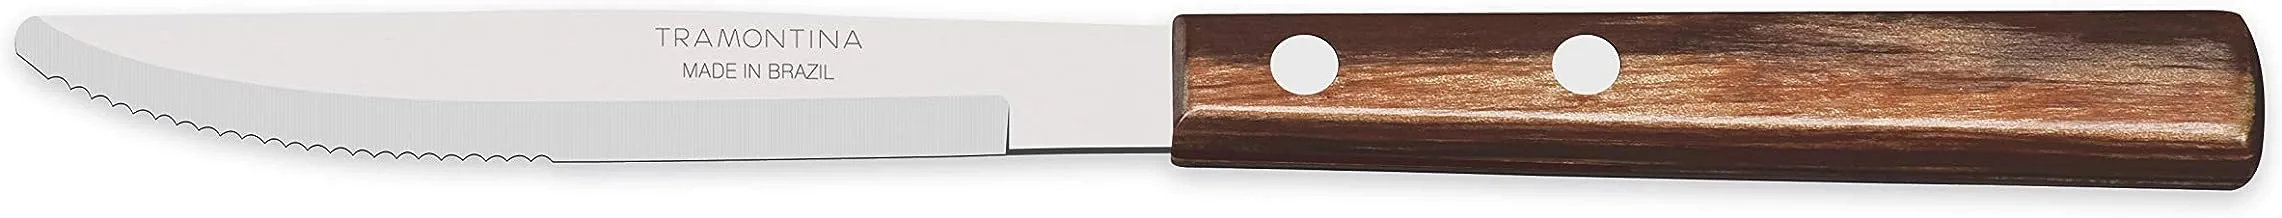 سكين طاولة ترامونتينا مقاس 10.16 سم مع شفرة من الفولاذ المقاوم للصدأ ومقبض آمن للاستخدام في غسالة الأطباق من خشب البوليوود البني المعالج